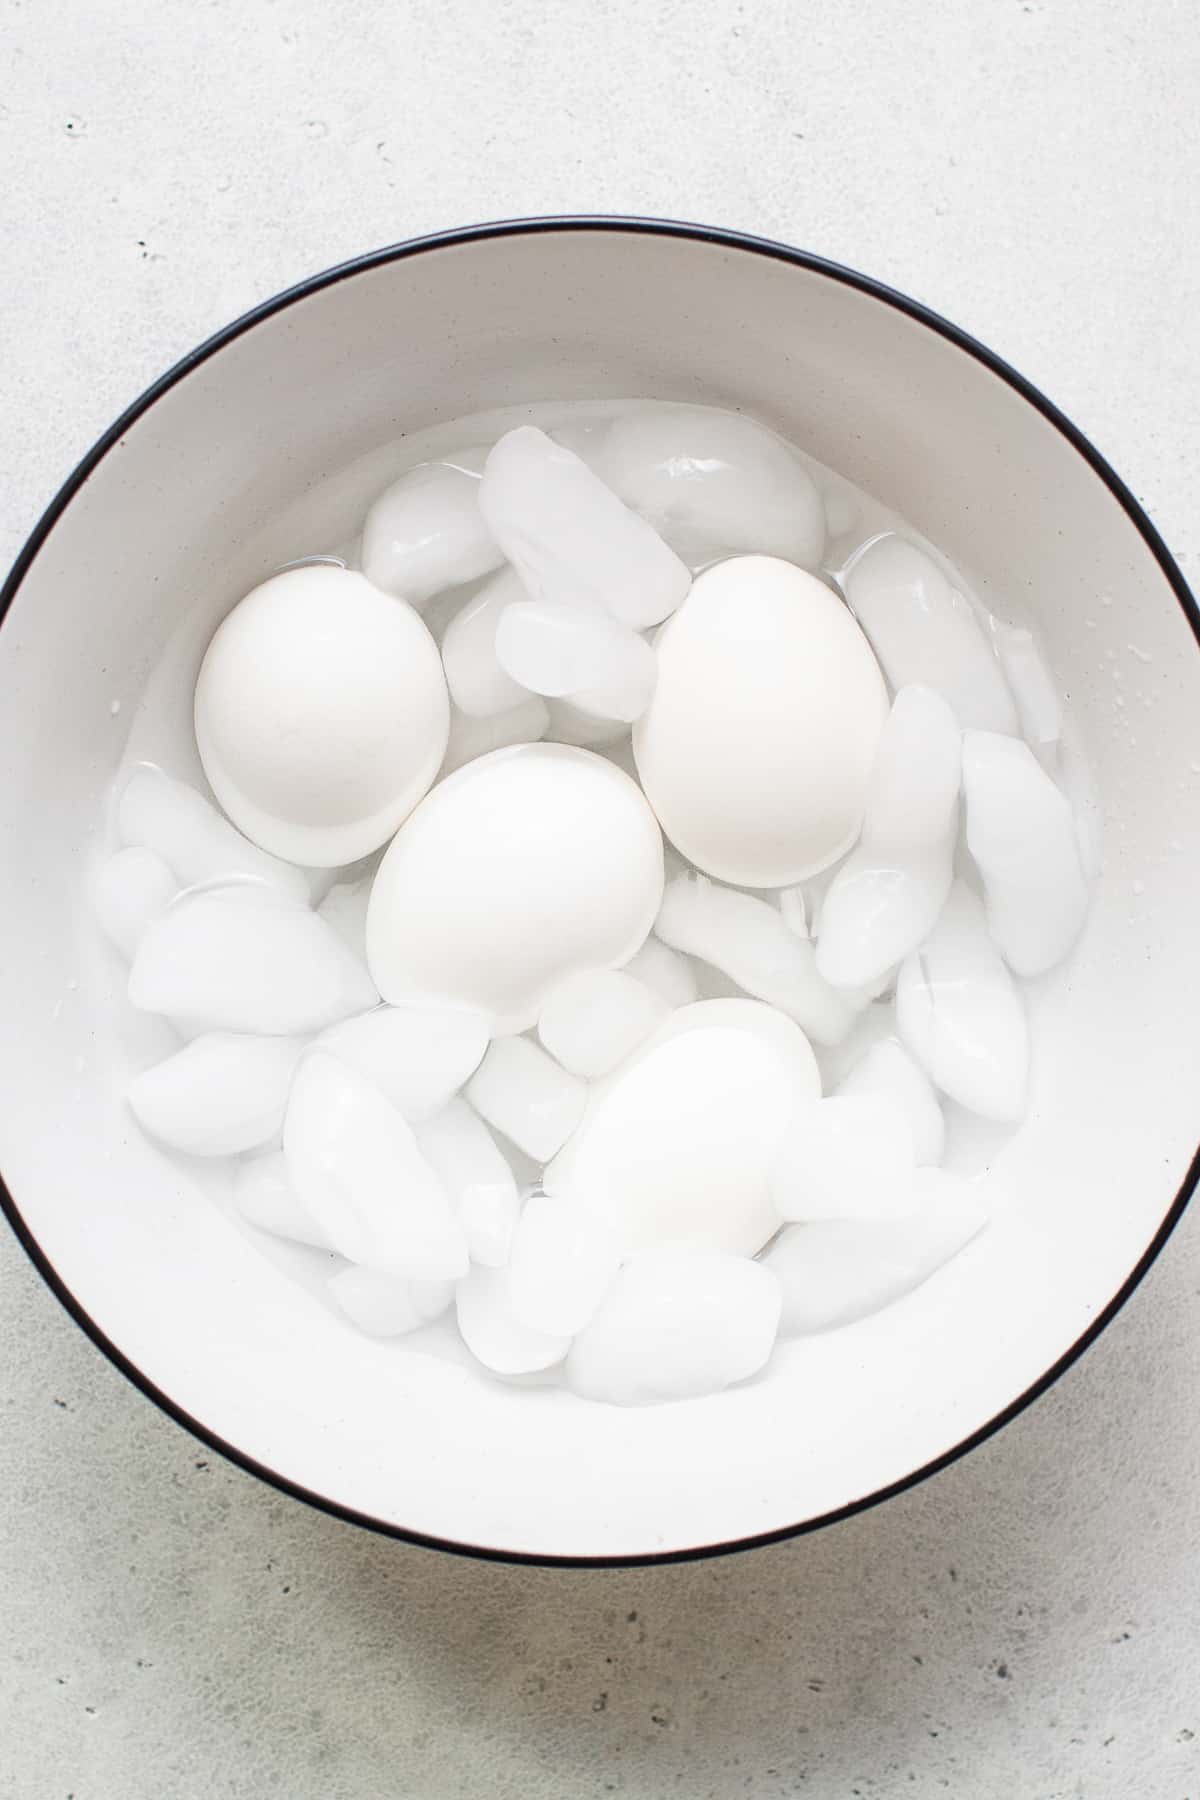 تخم مرغ آب پز نرم در یک کاسه با یخ.